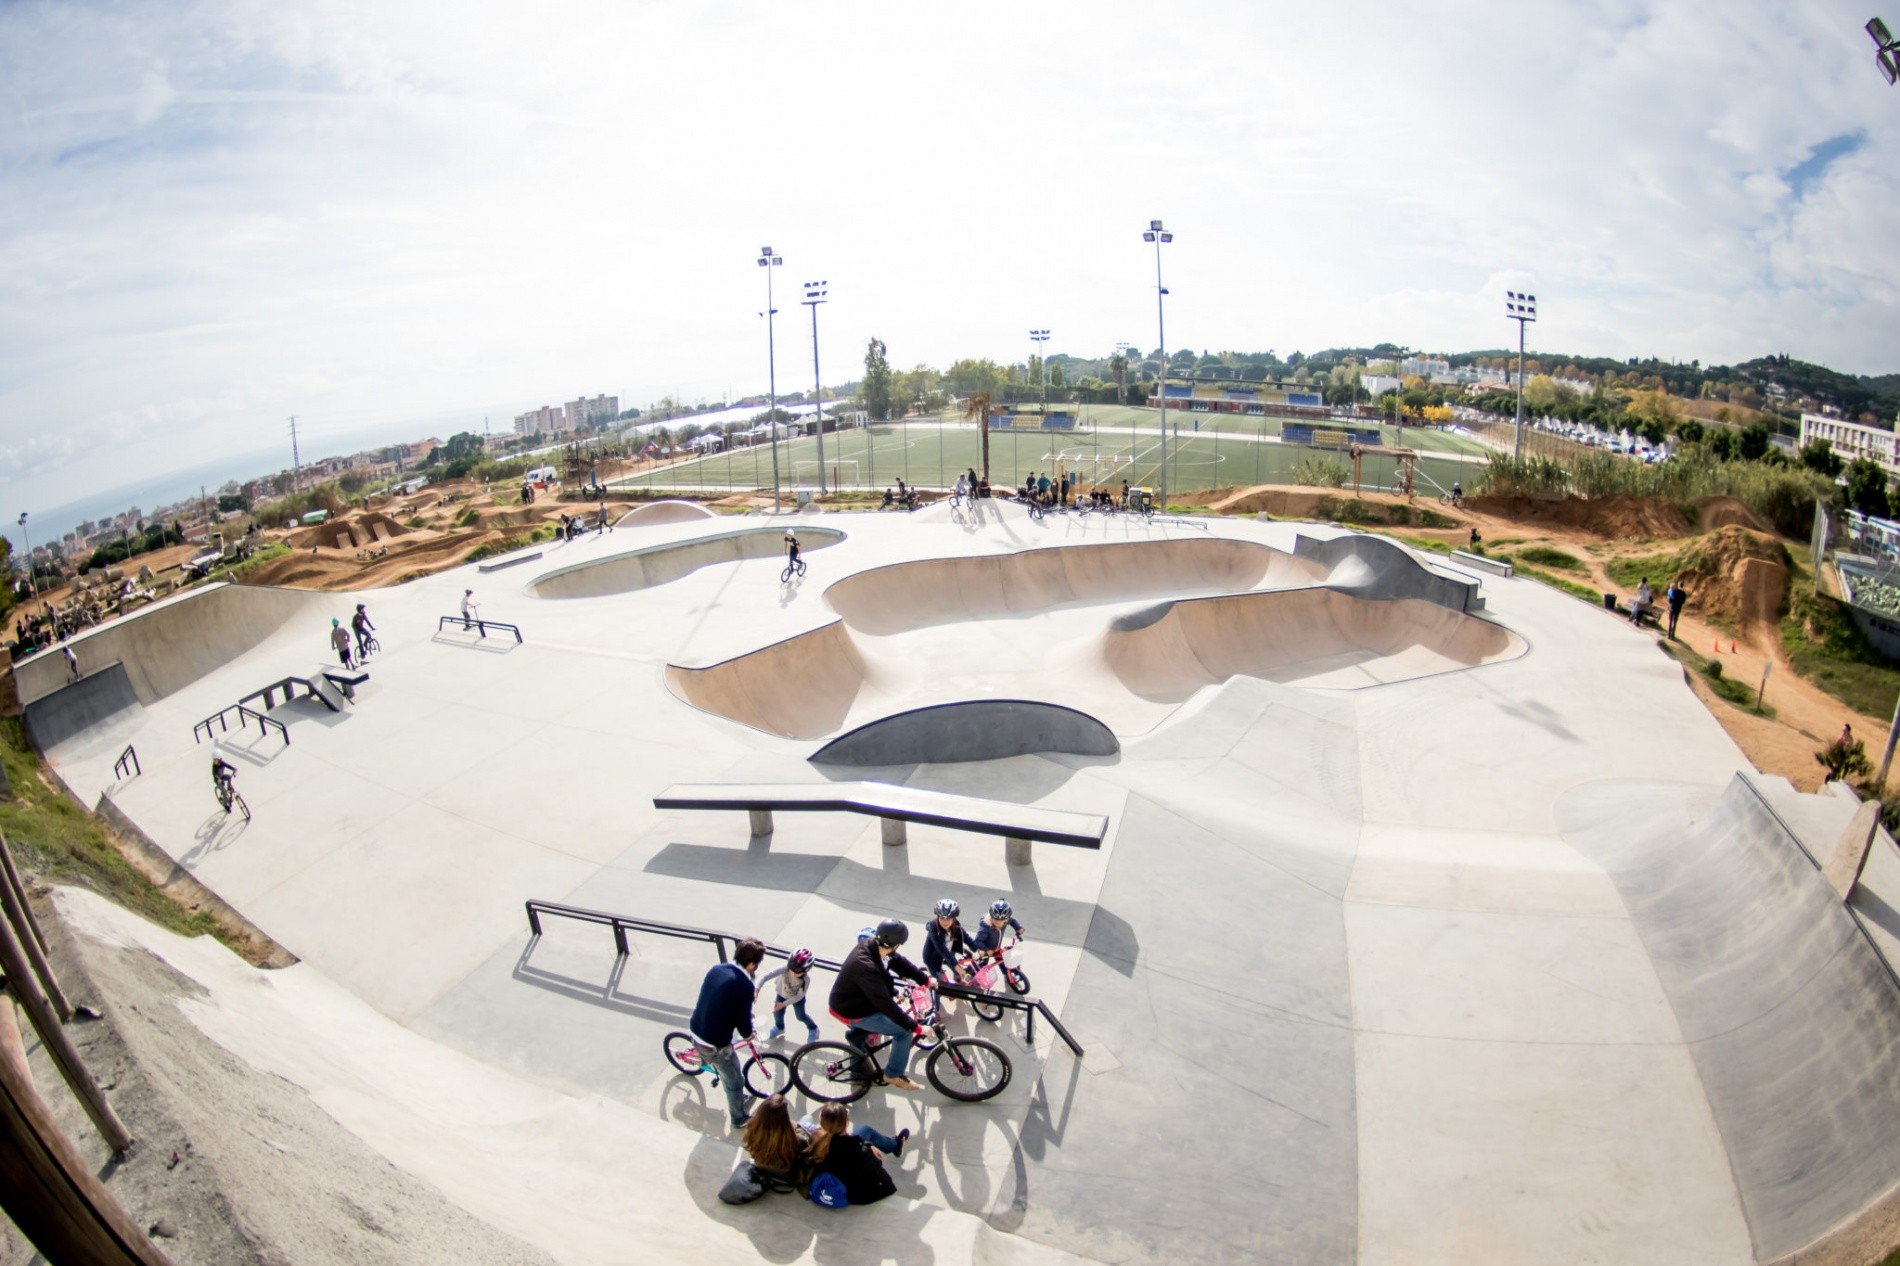 La Poma Skatepark